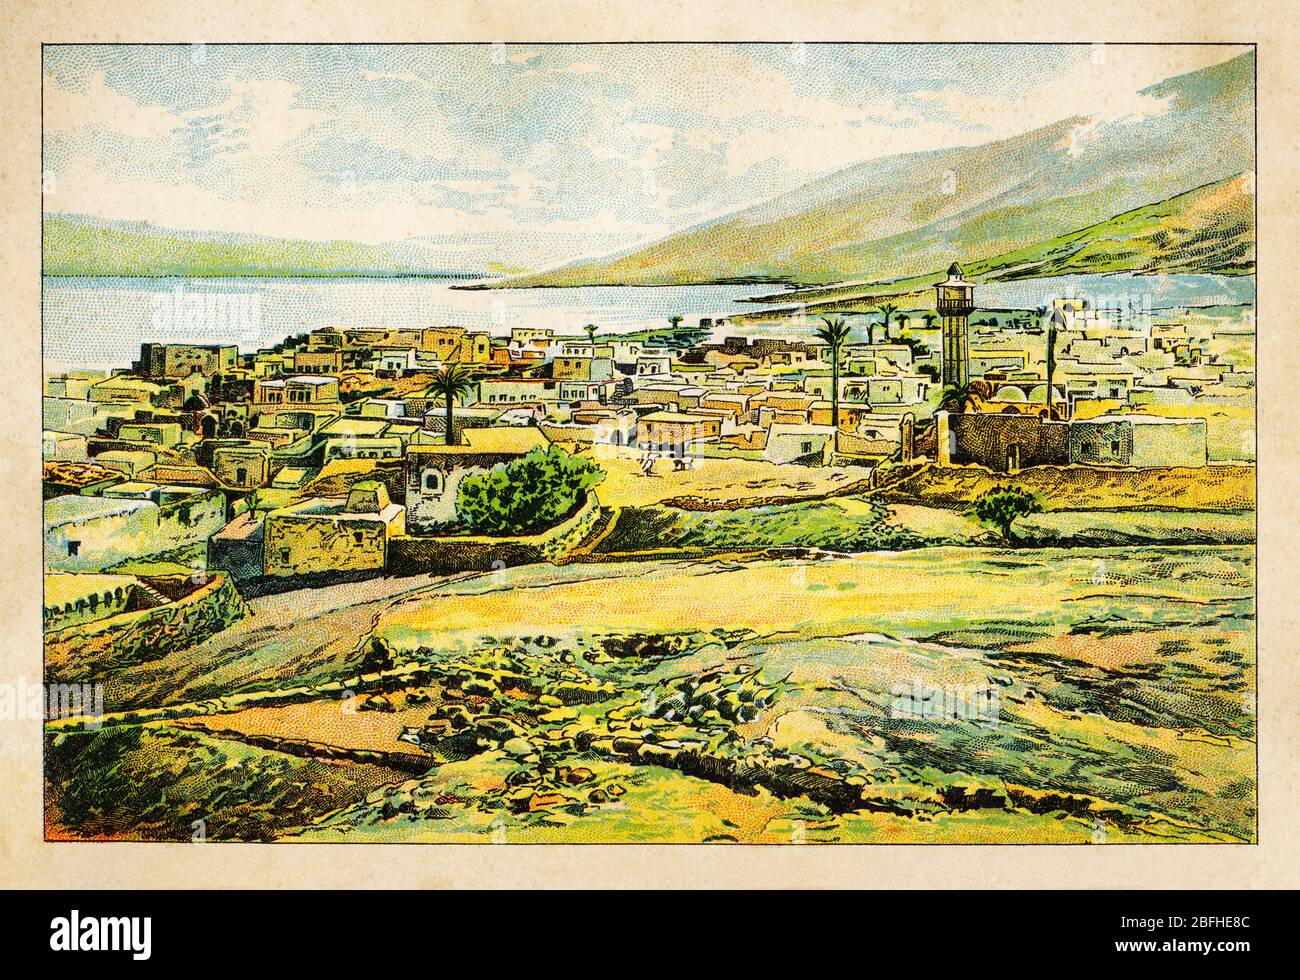 Paysage vue panoramique village de Tiberais, Lac de Tiberias, Mer de Galilée. Israël, ancienne chromolithographie de couleur la Terre Sainte 1898 Banque D'Images